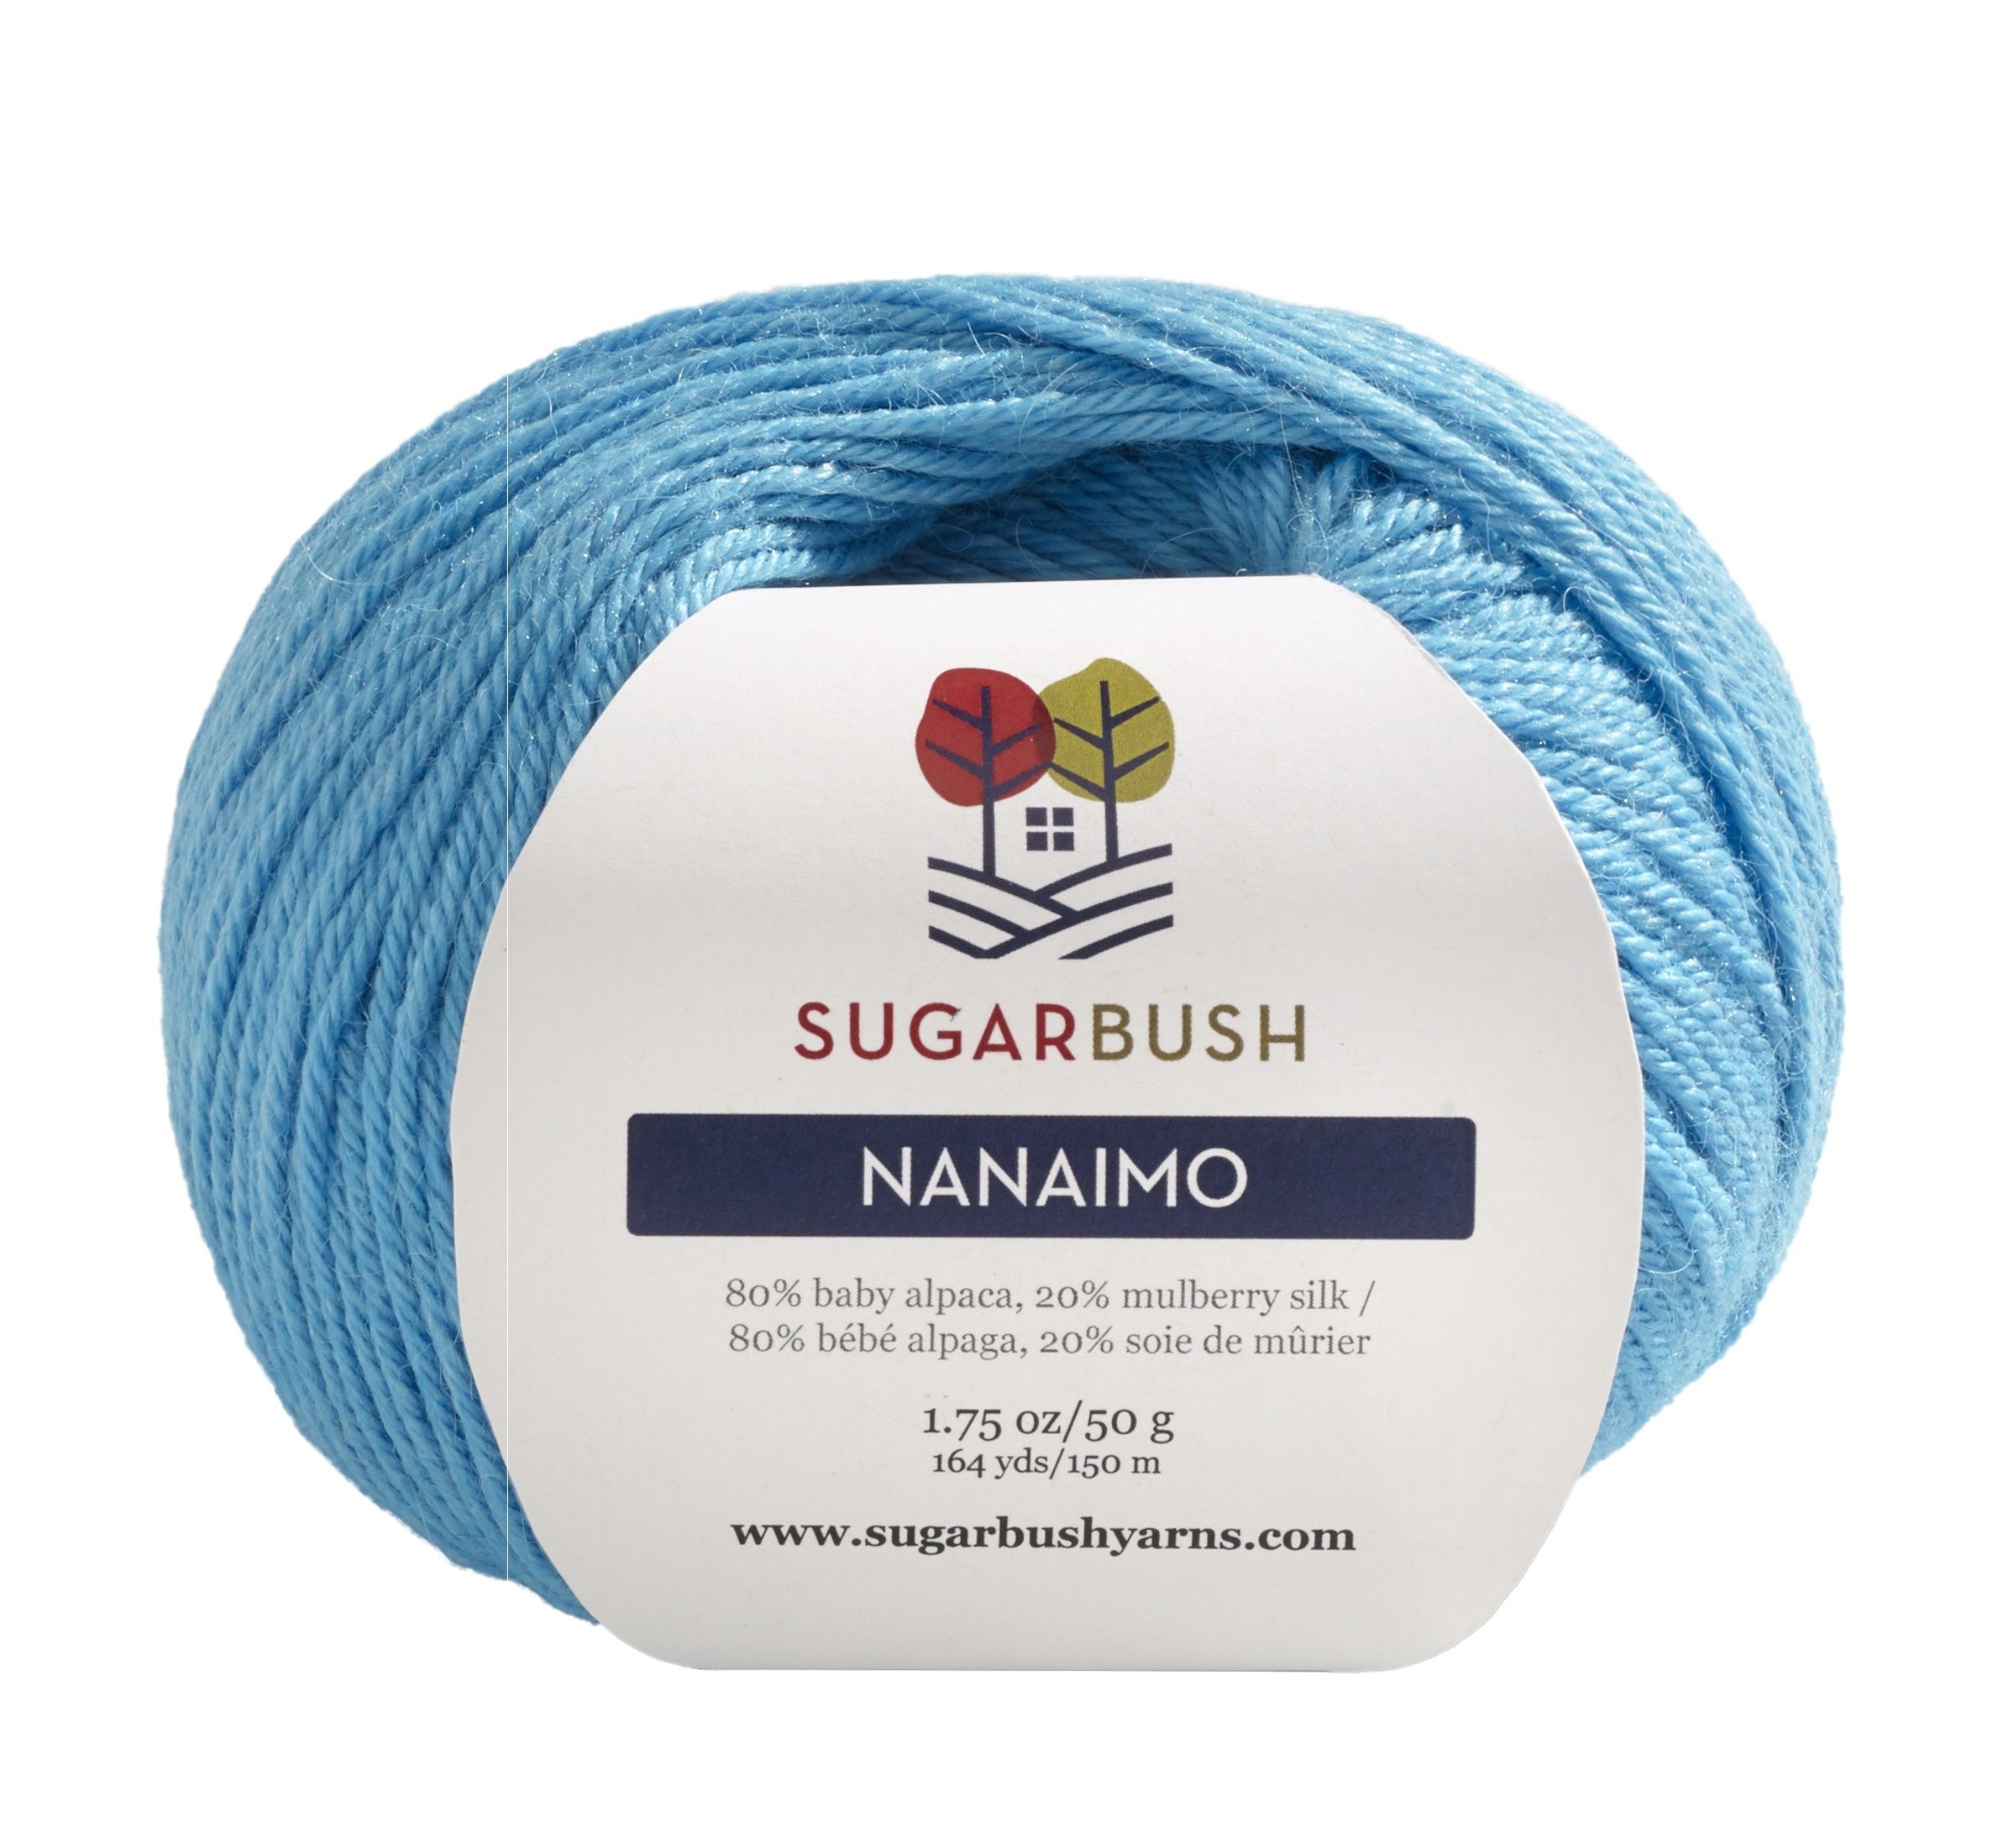 Sugar Bush - Nanaimo 25% off sweater quantity-image